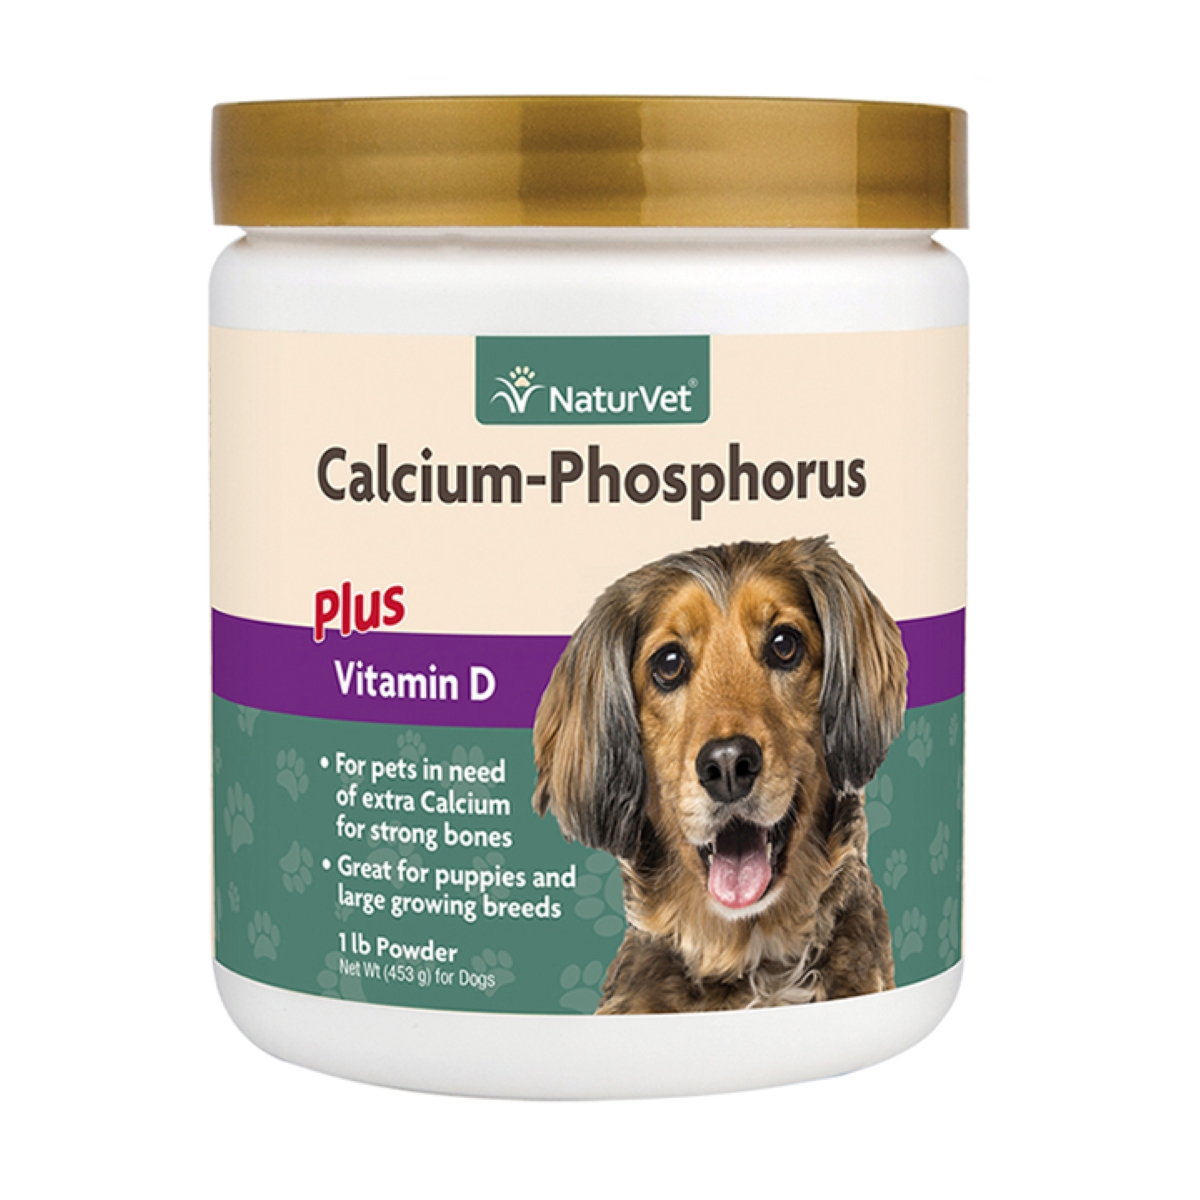 NaturVet Calcium-Phosphorous Plus Vitamin D Powder, 1 lb.